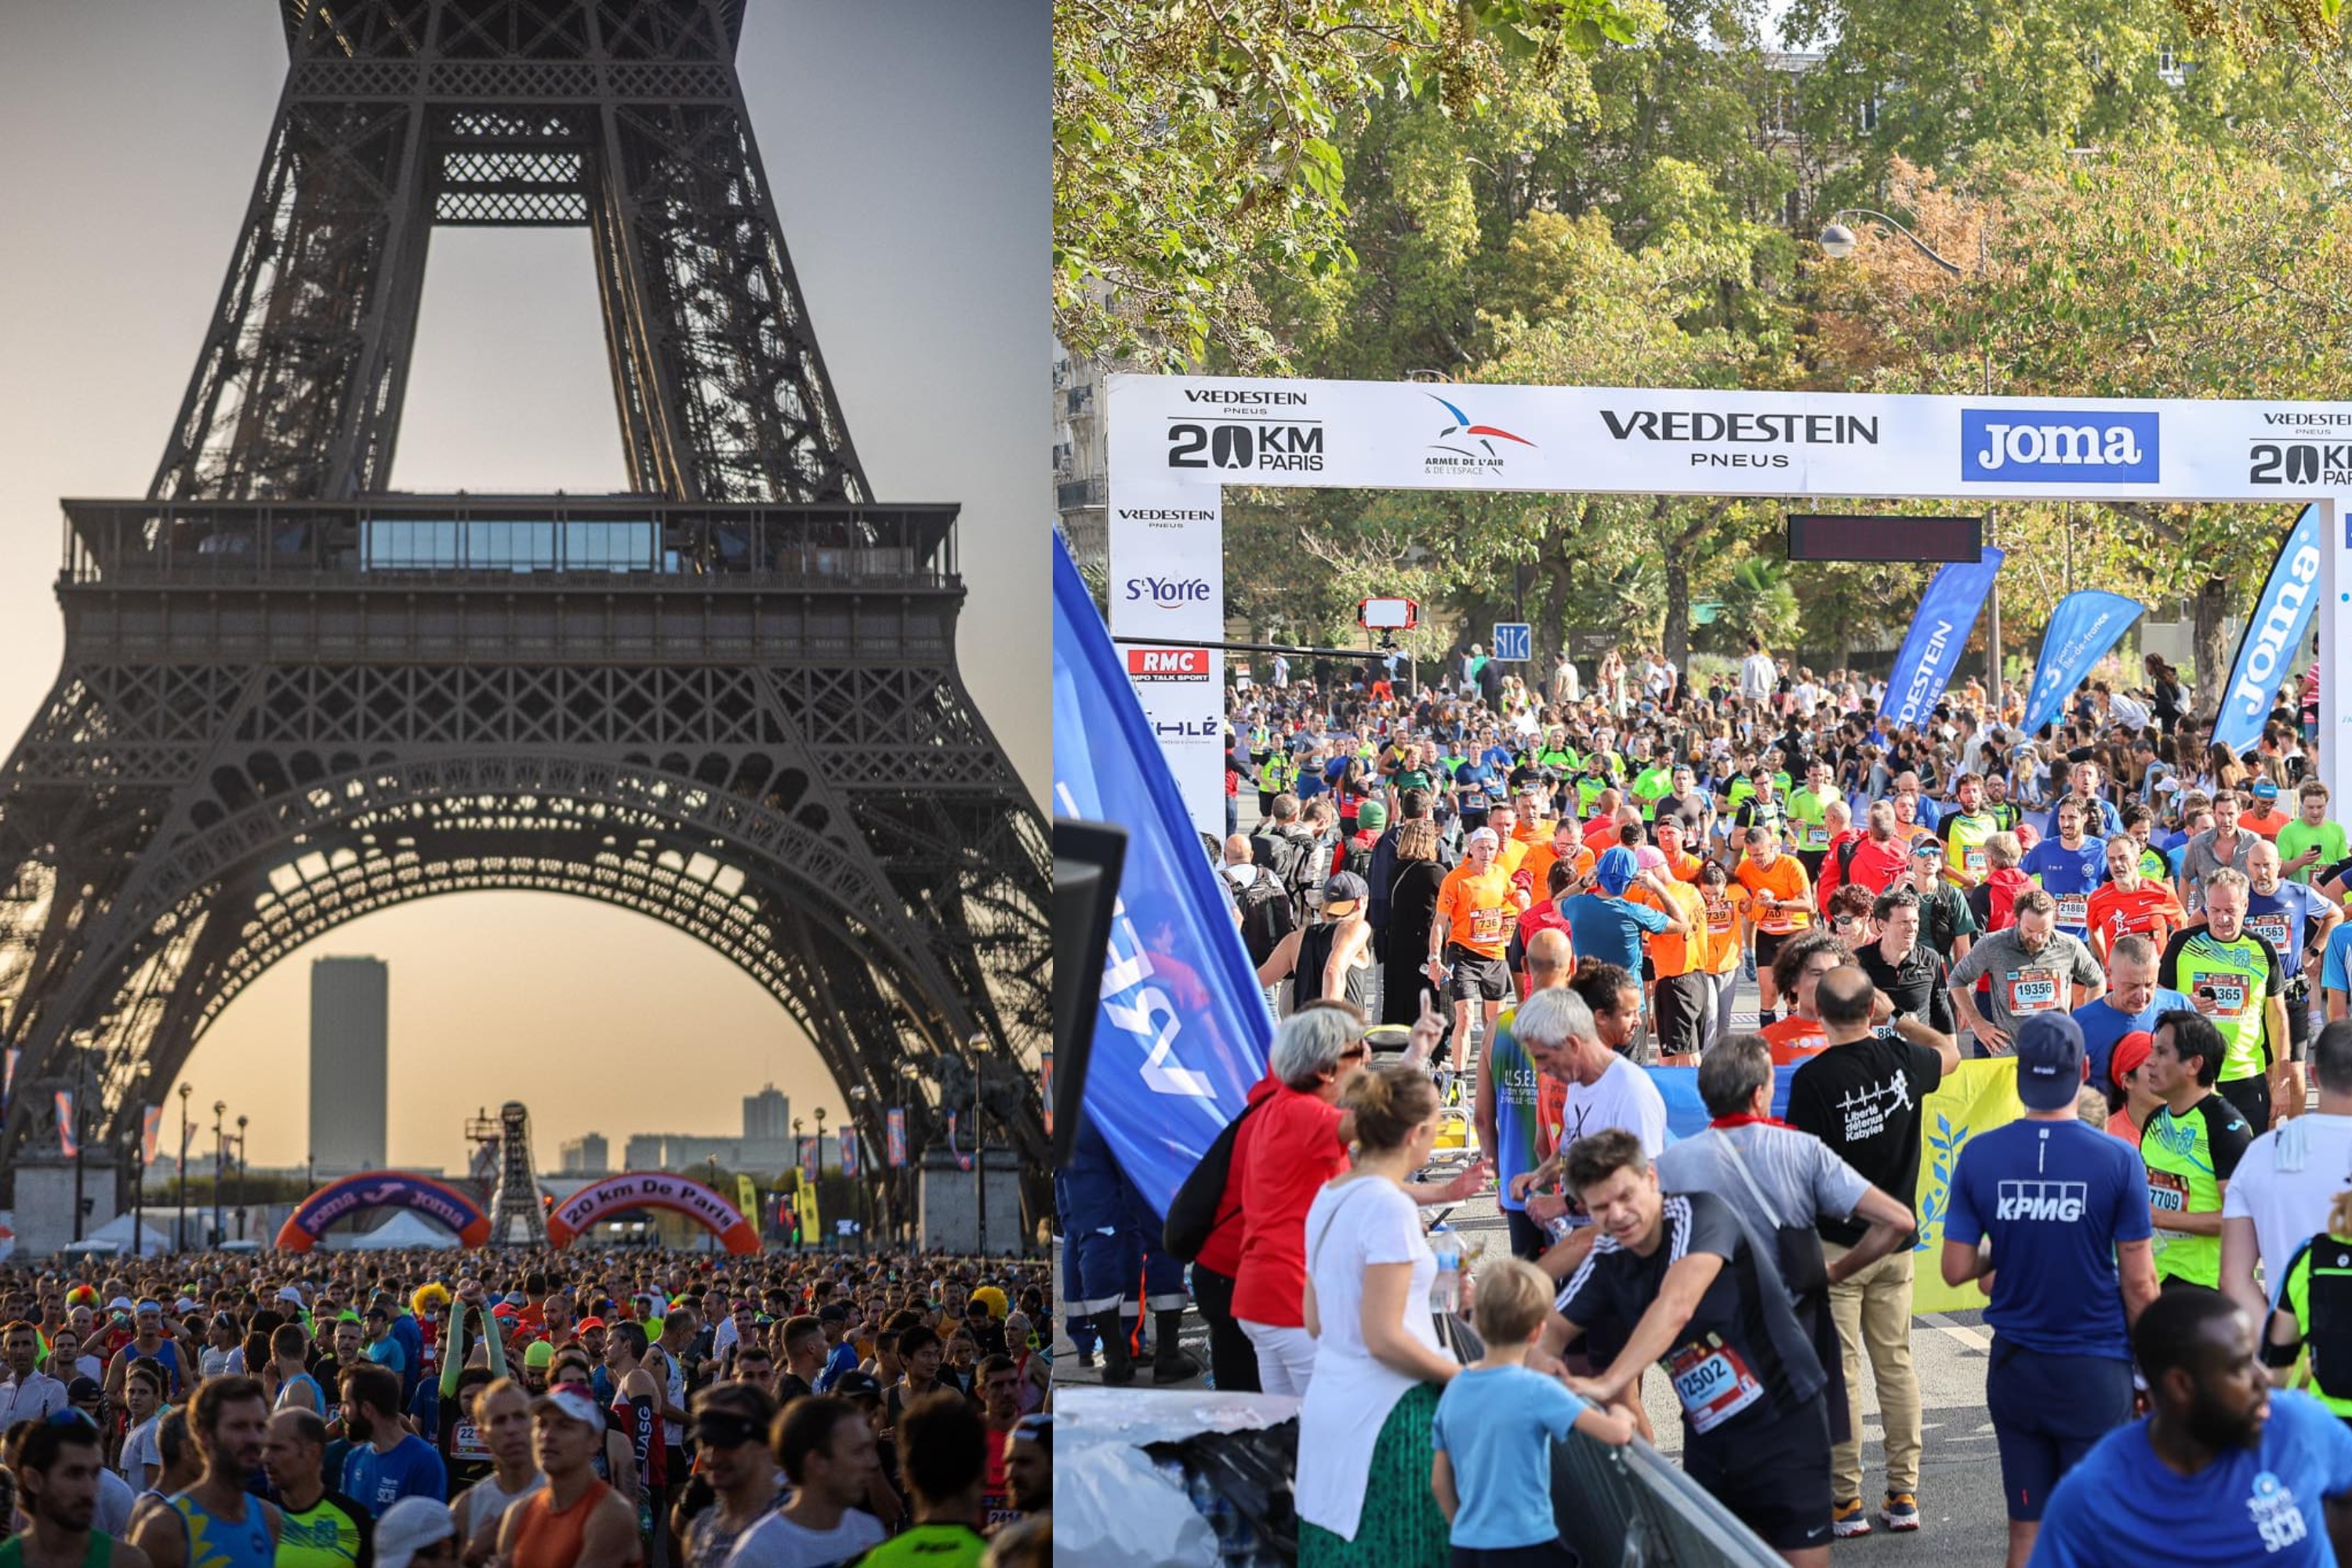 Paris-Versailles, au cœur de la Grande Classique de la course à pied, avec  sa mythique Côte des Gardes à 7 % de moyenne - La DH/Les Sports+